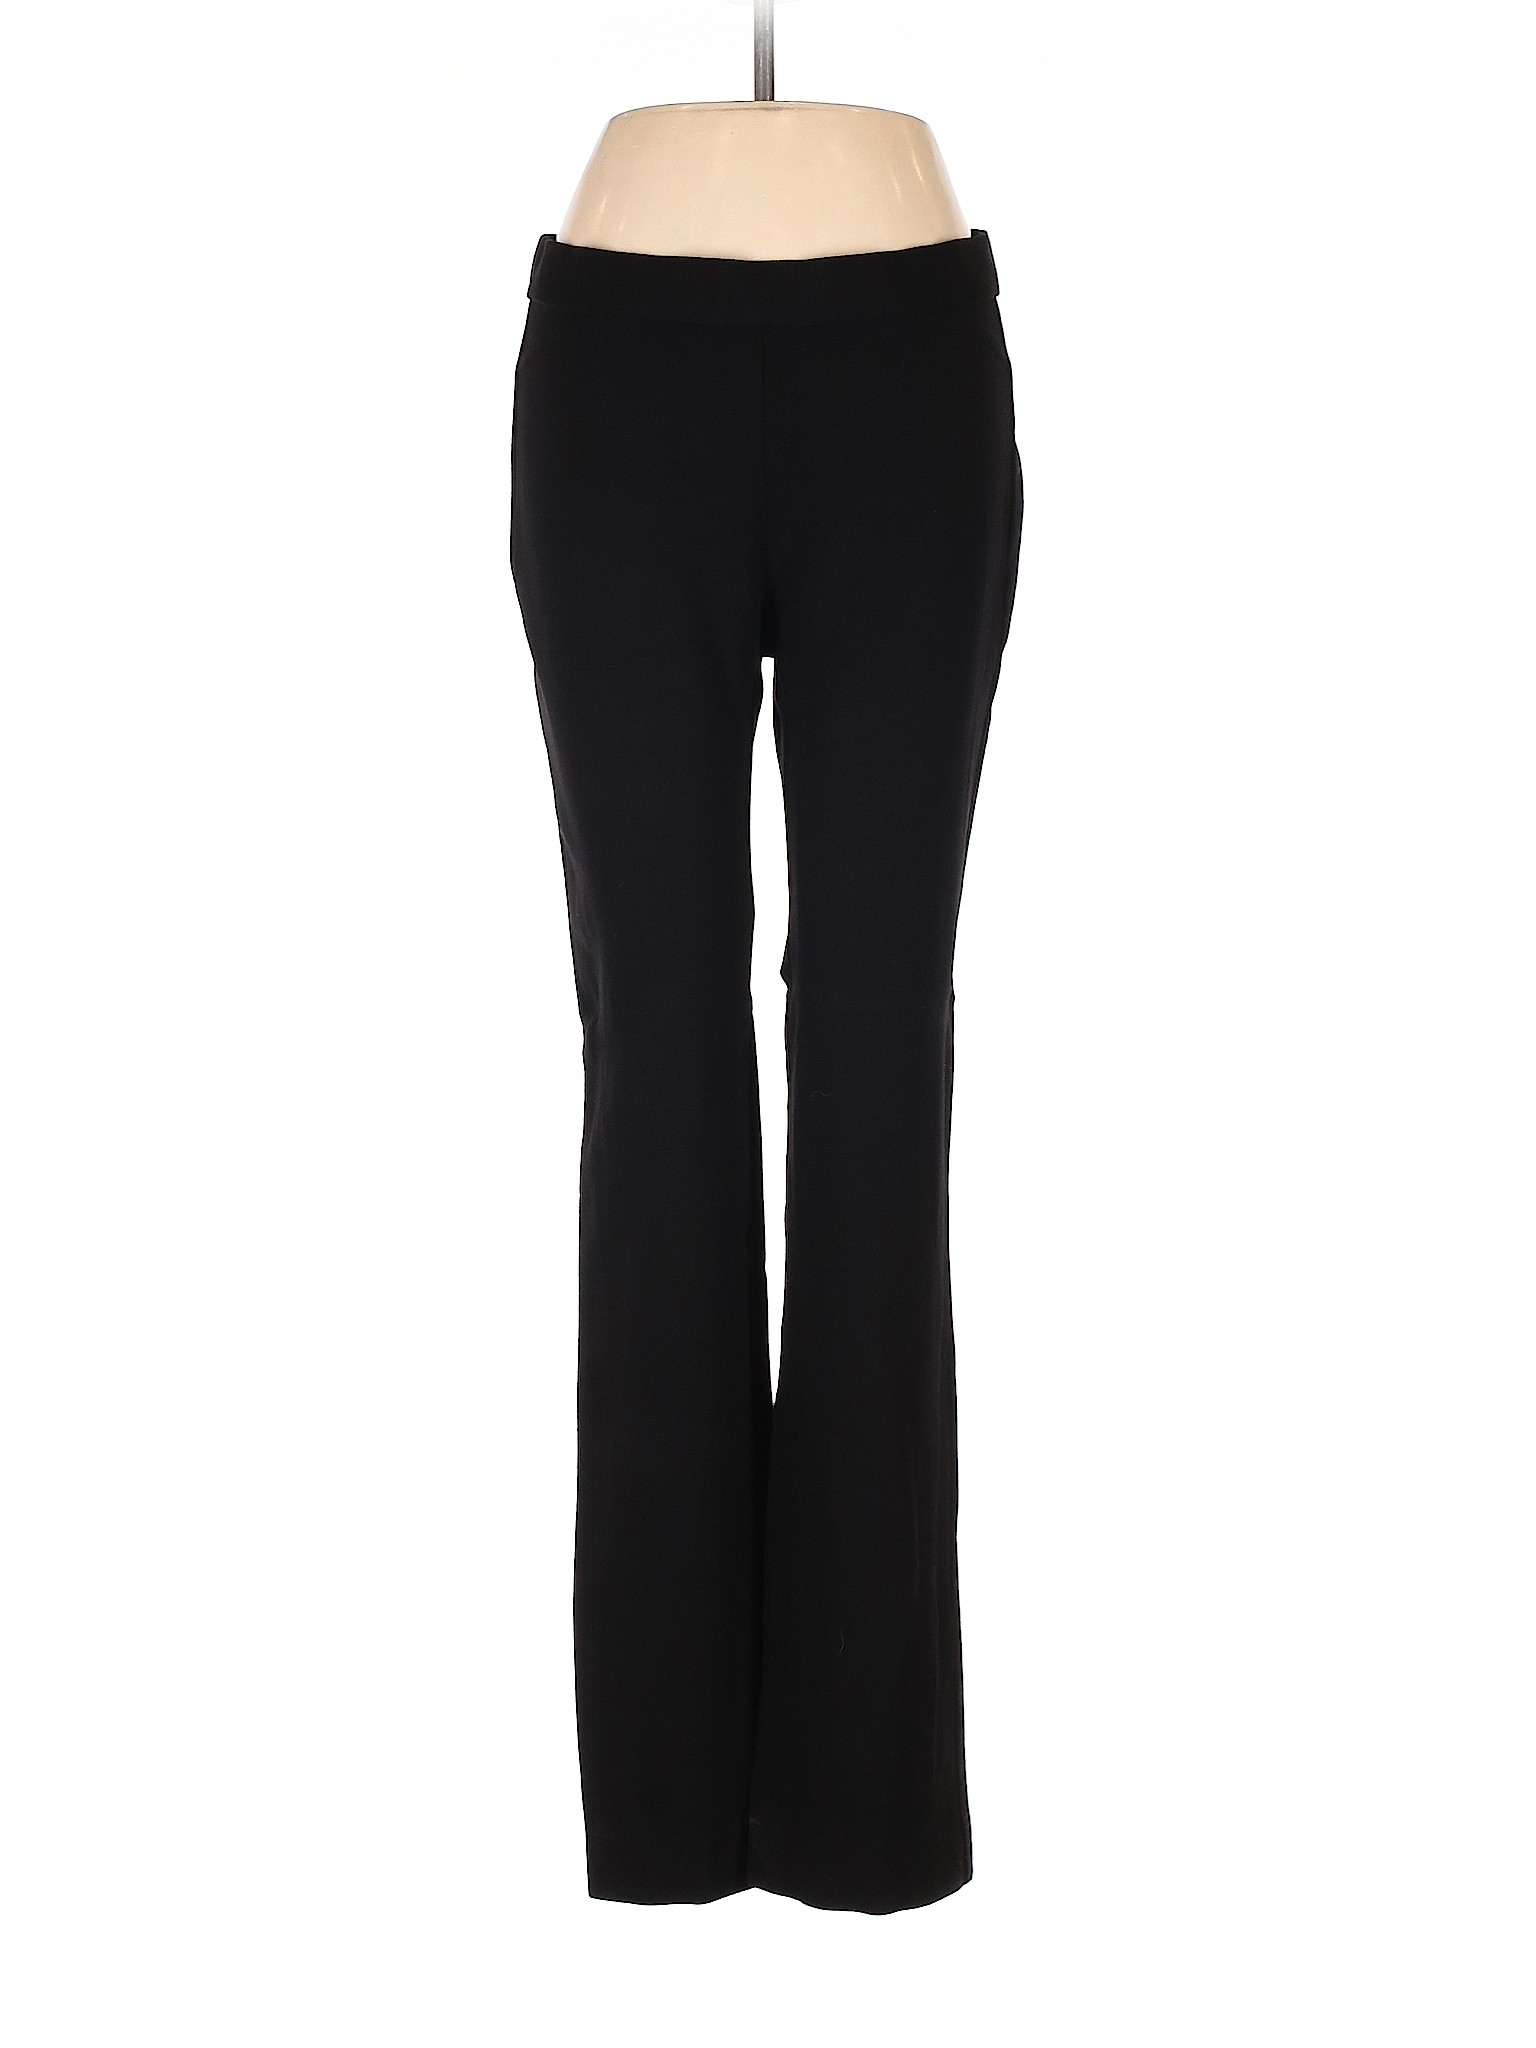 Chaus Women Black Dress Pants S | eBay